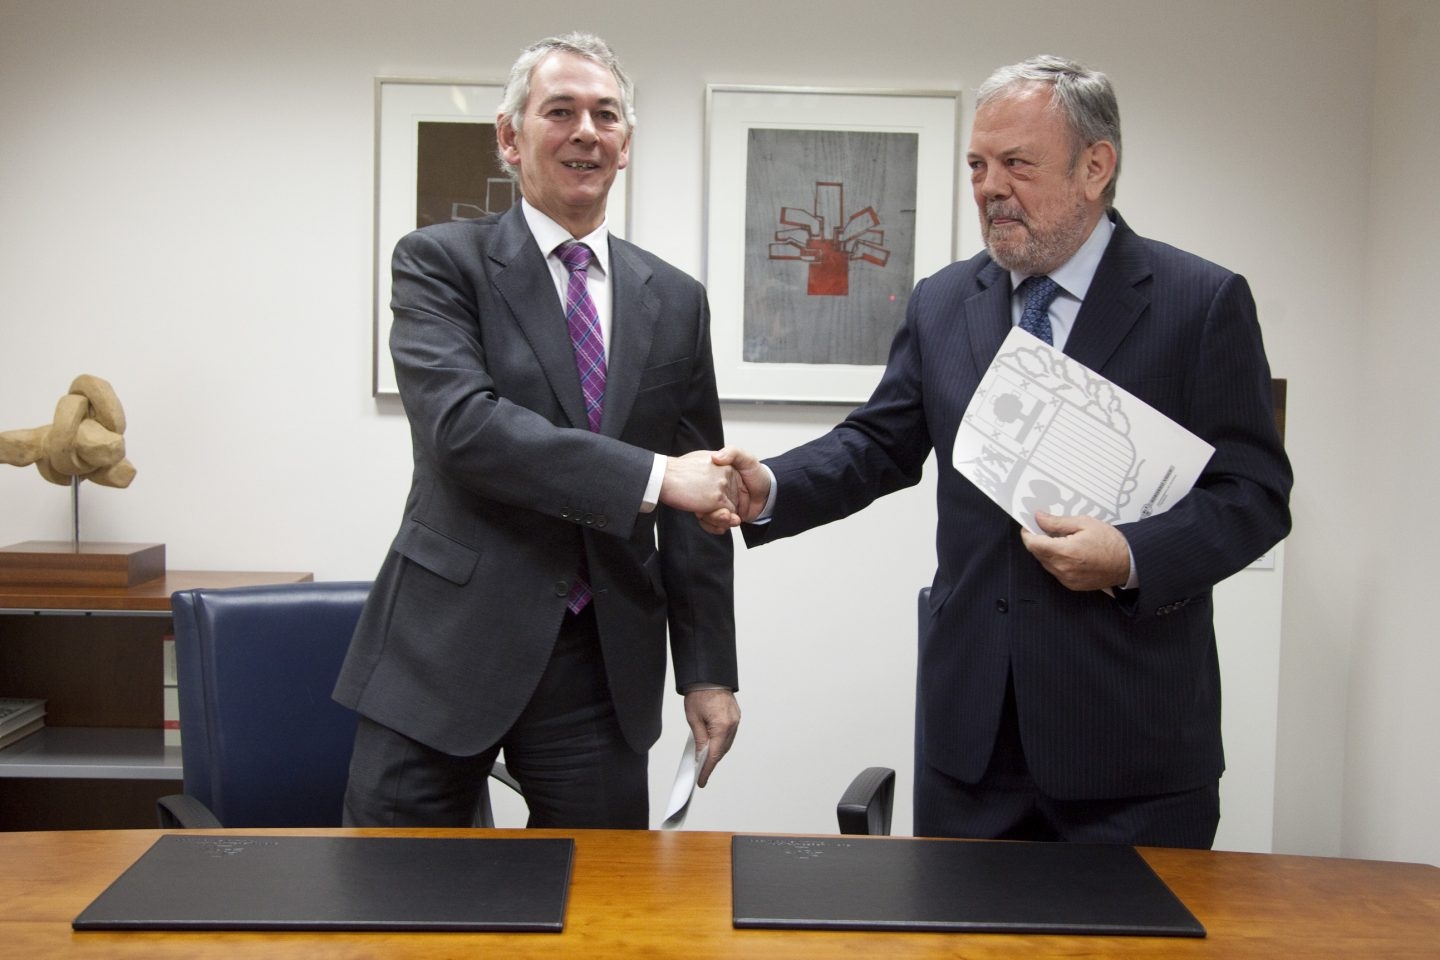 PNV y PP firman su alianza presupuestaria en Euskadi